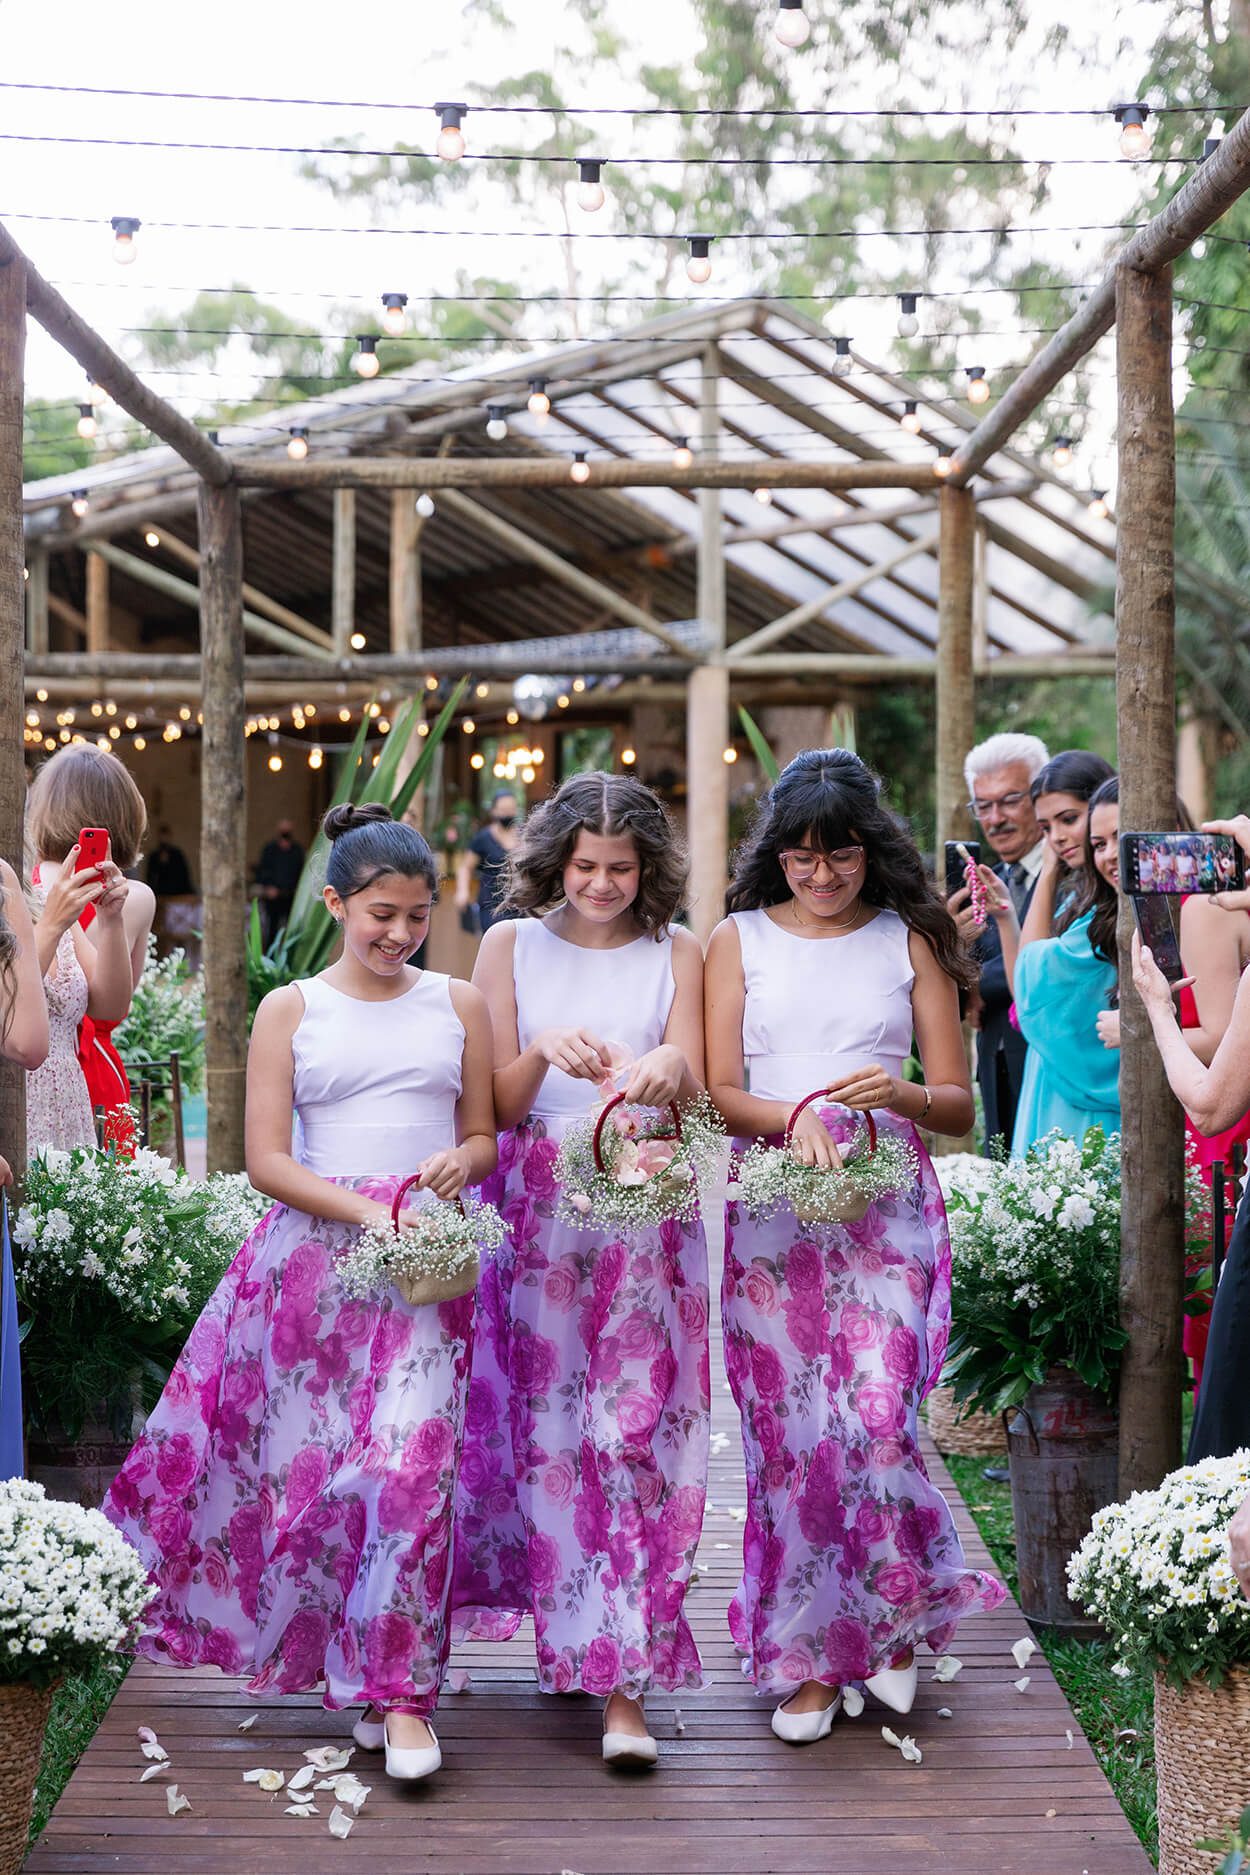 floristas com vestidos roxos e brancos